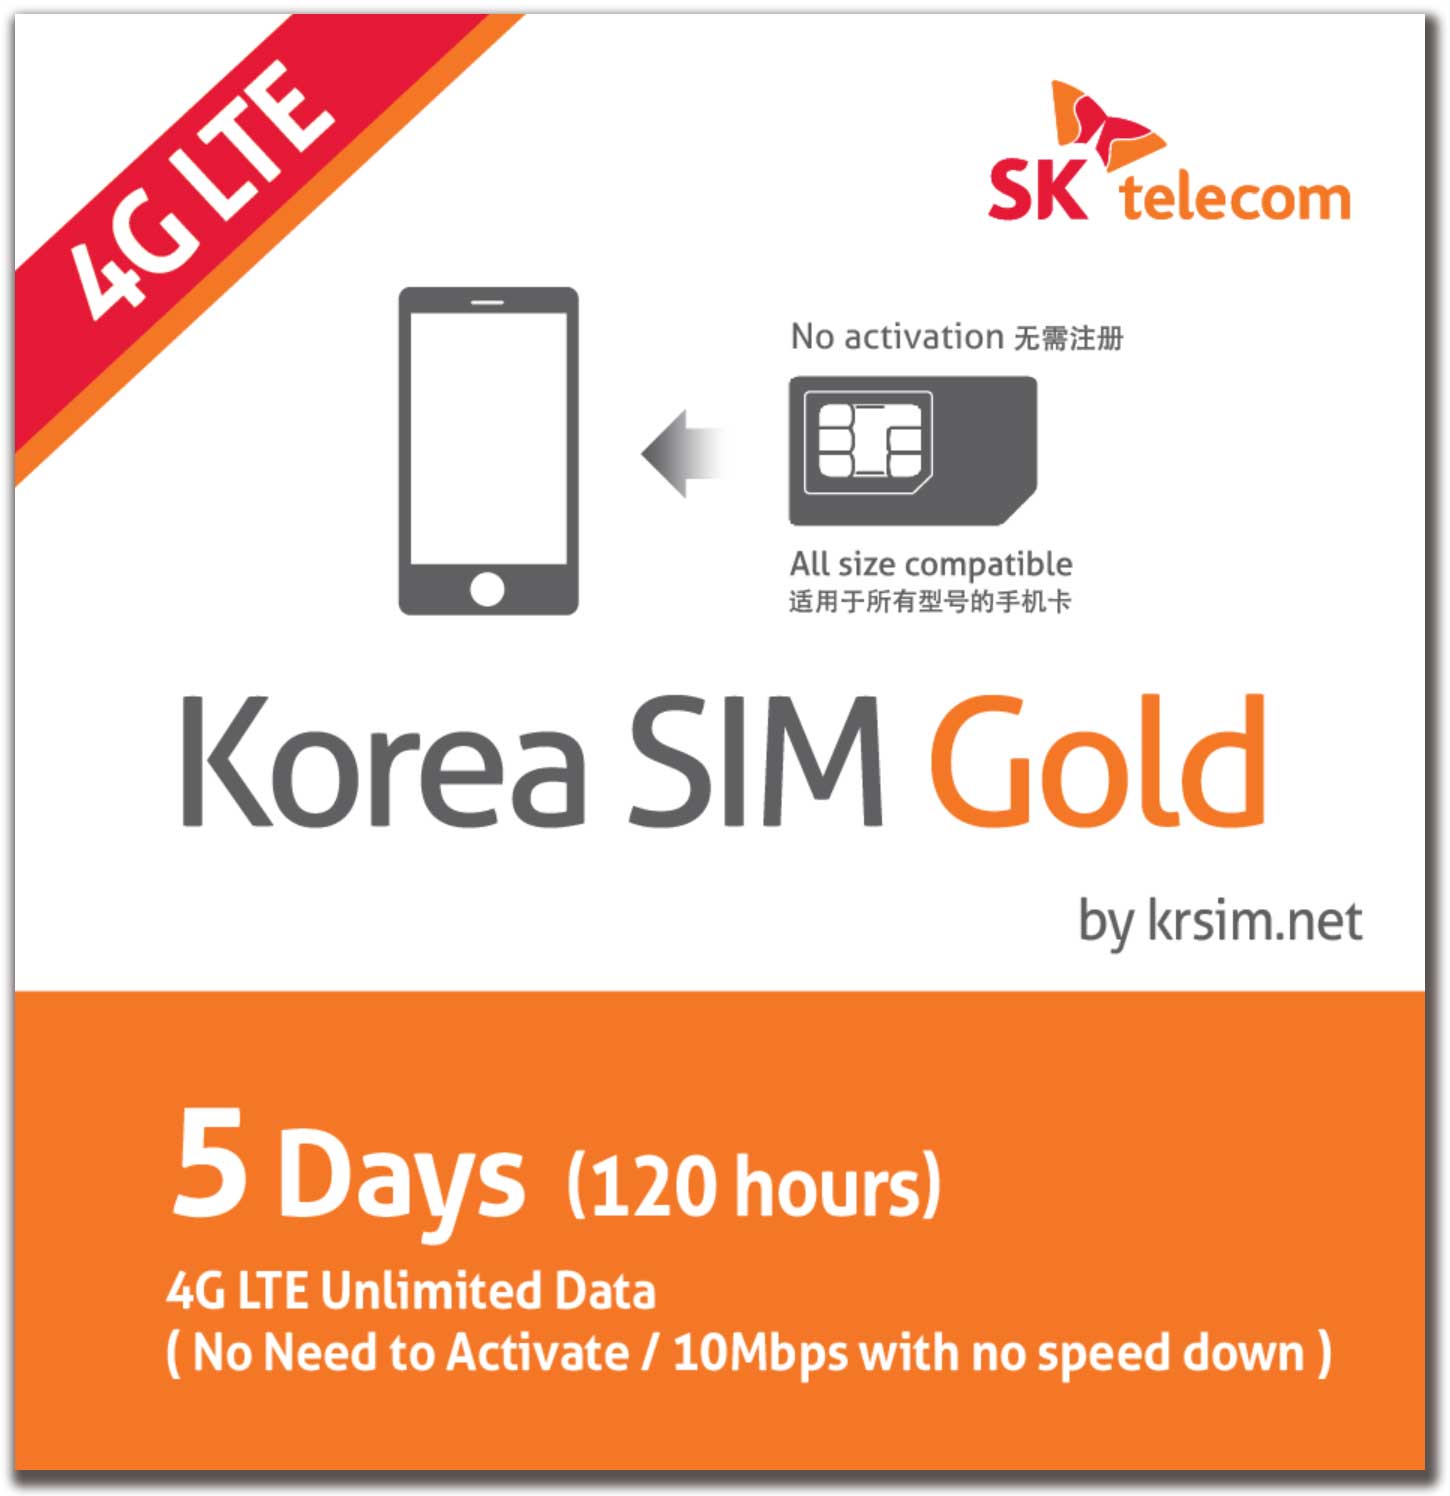 Korea SIM Gold